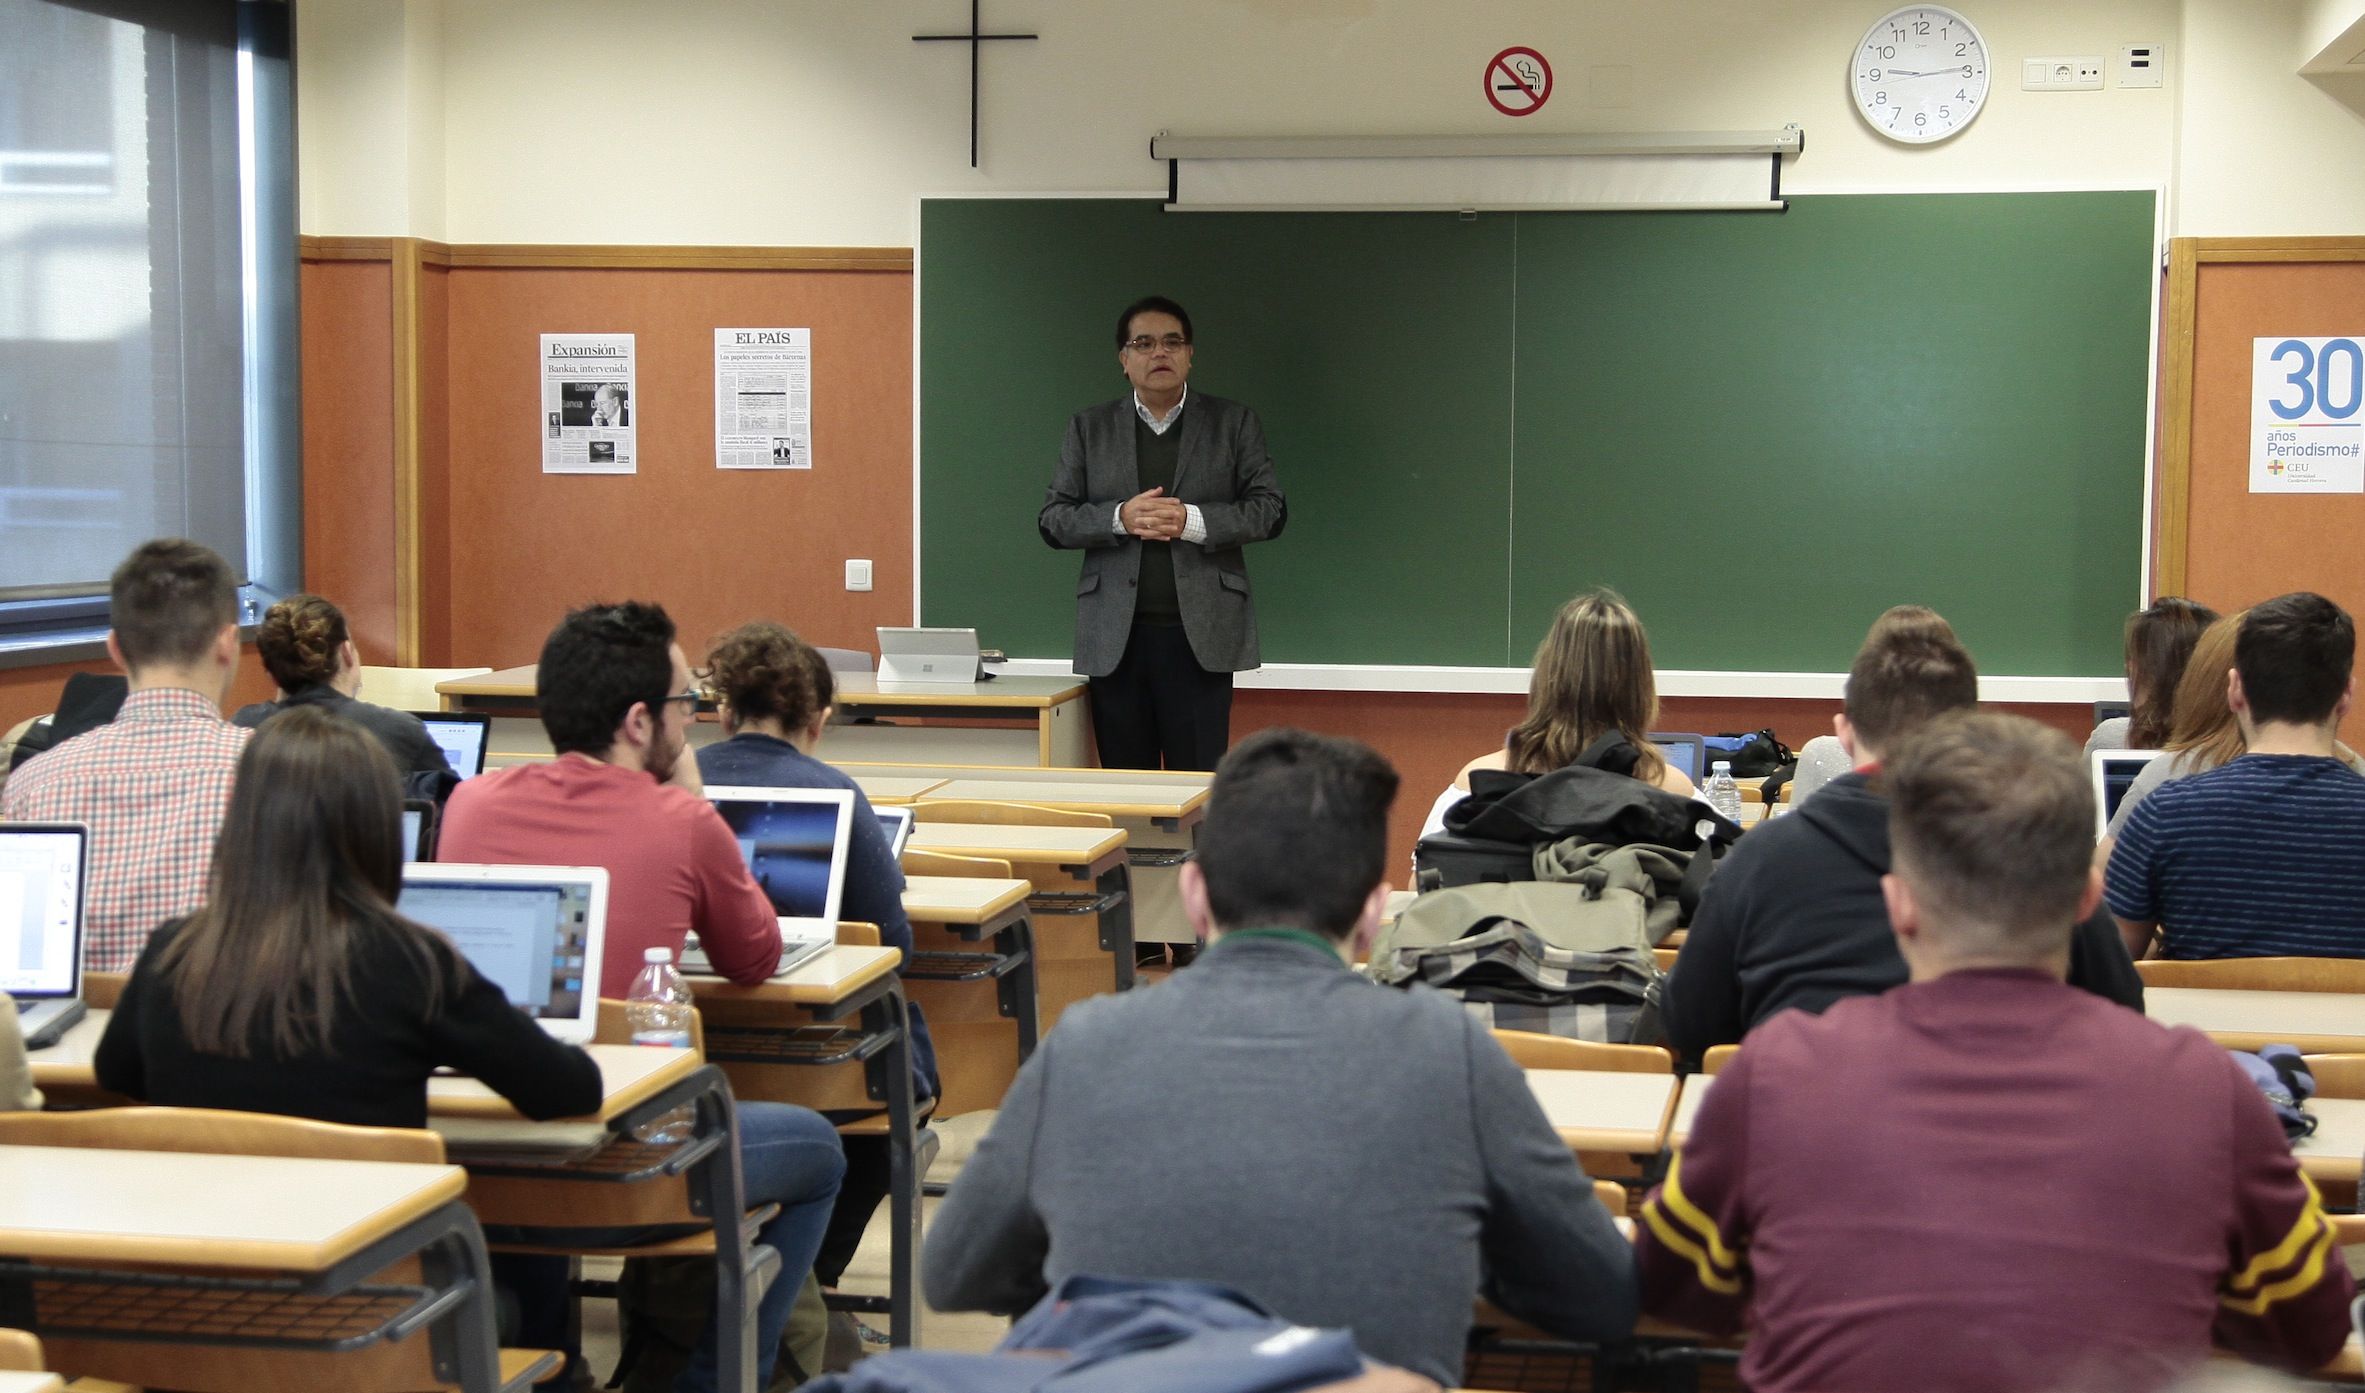 El profesor de la Michigan State University, Manuel Chávez, en una de las clases magistrales impartidas a los estudiantes de Periodismo de la CEU-UCH.